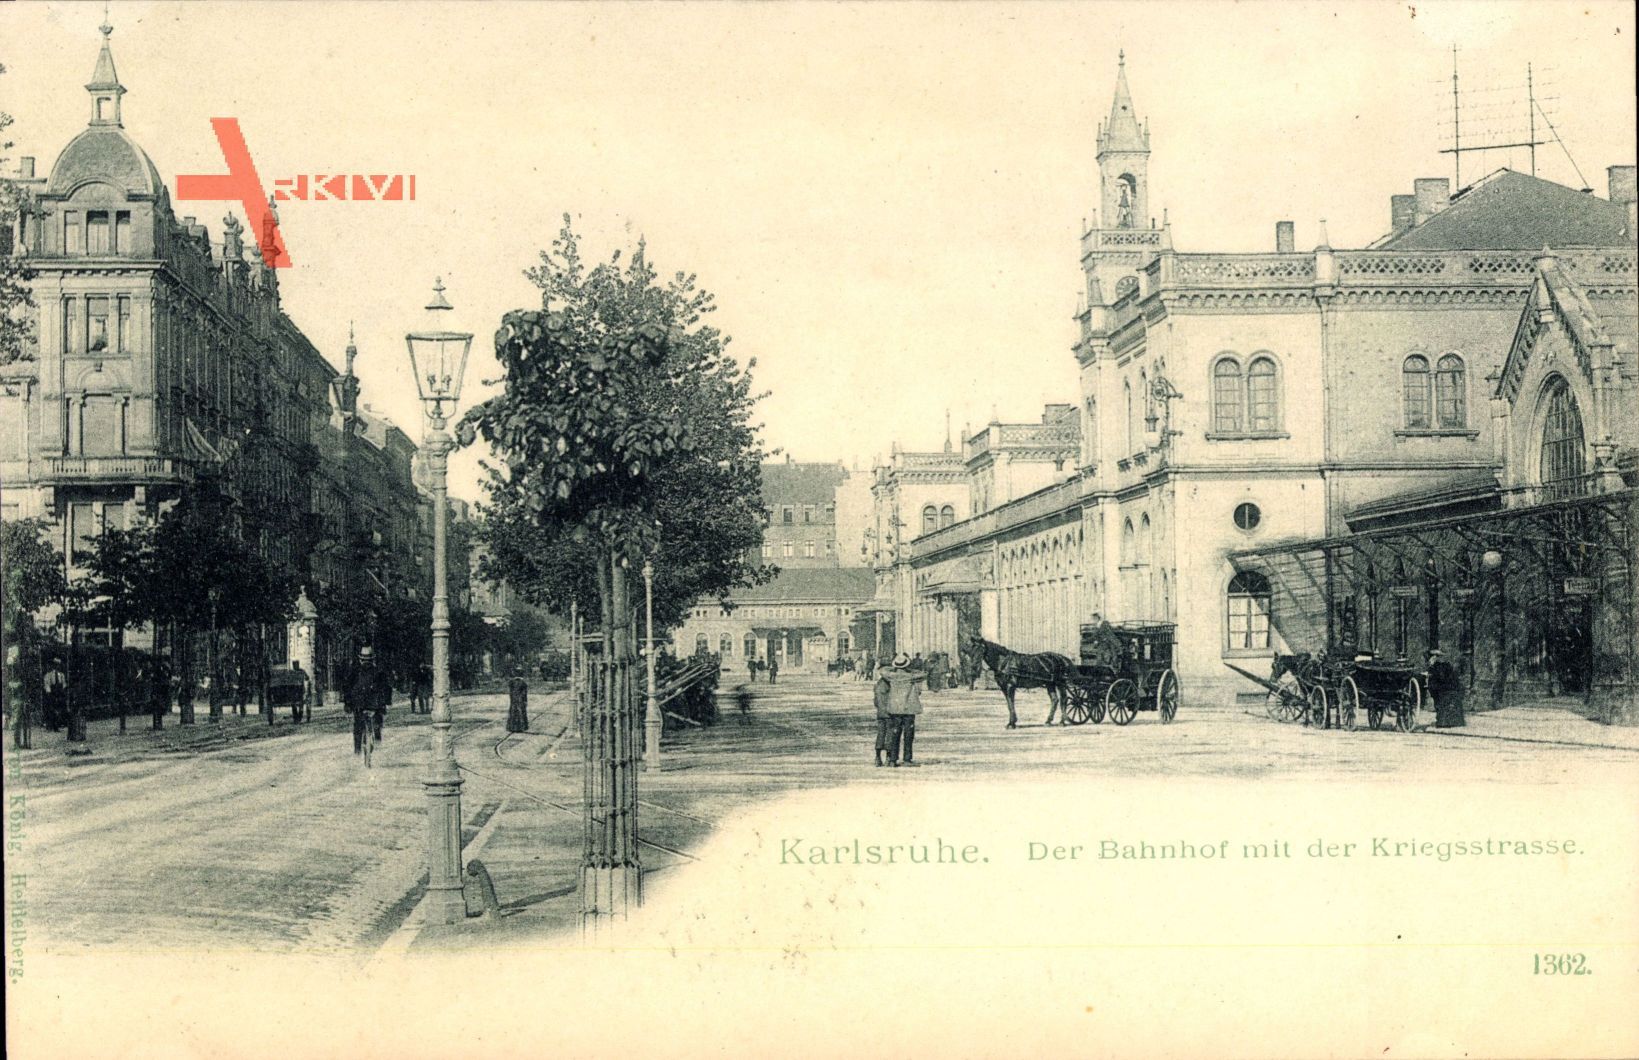 Karlsruhe in Baden Württemberg , Bahnhof mit der Kriegstraße, Pferdekutsche